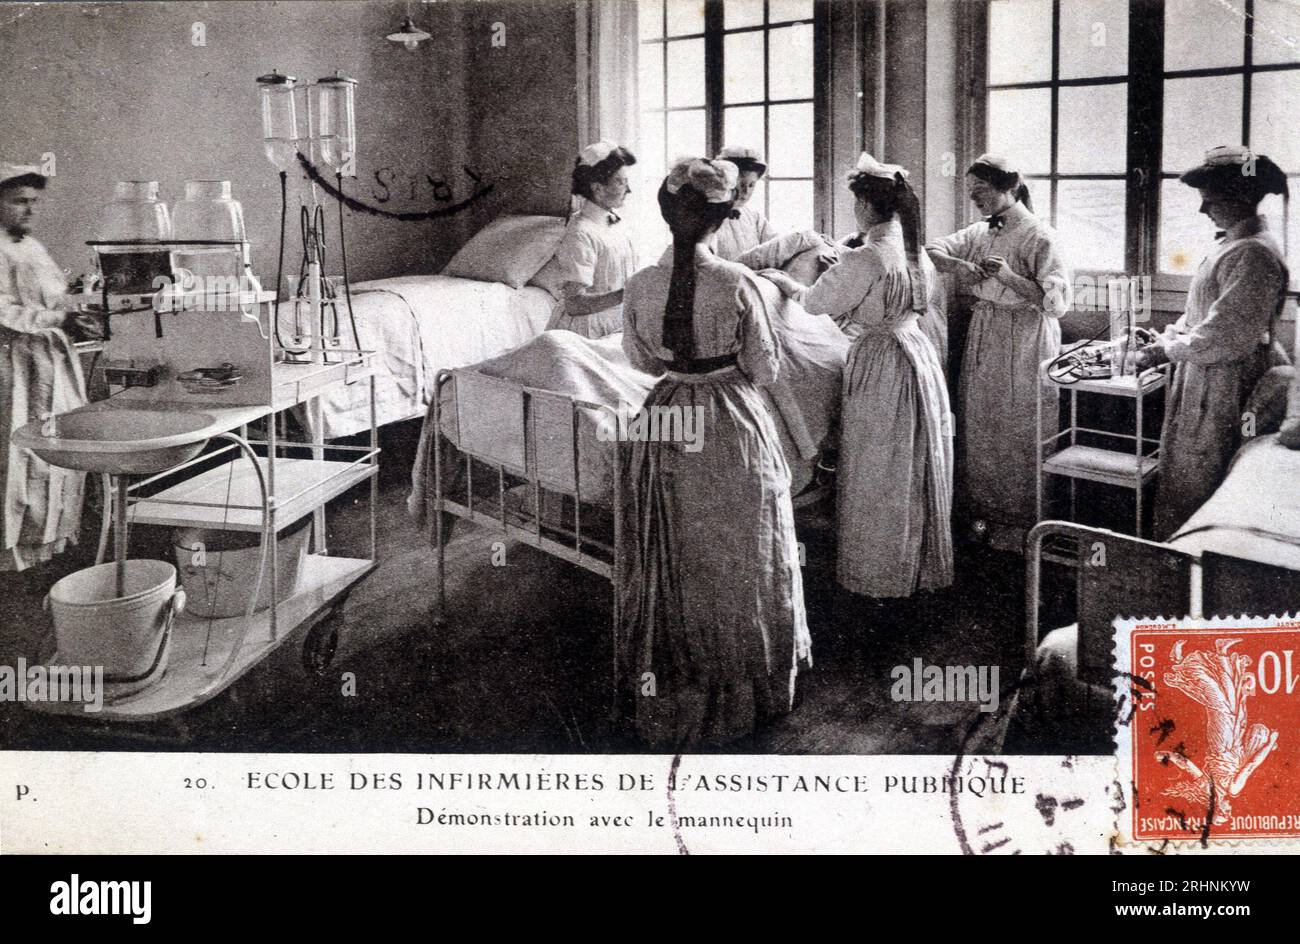 Carte postale de l'ecole des infirmieres de l'assistance publique : demonstration avec le mannequin, vers 1908. Bibliotheque Marguerite Durand. Stock Photo